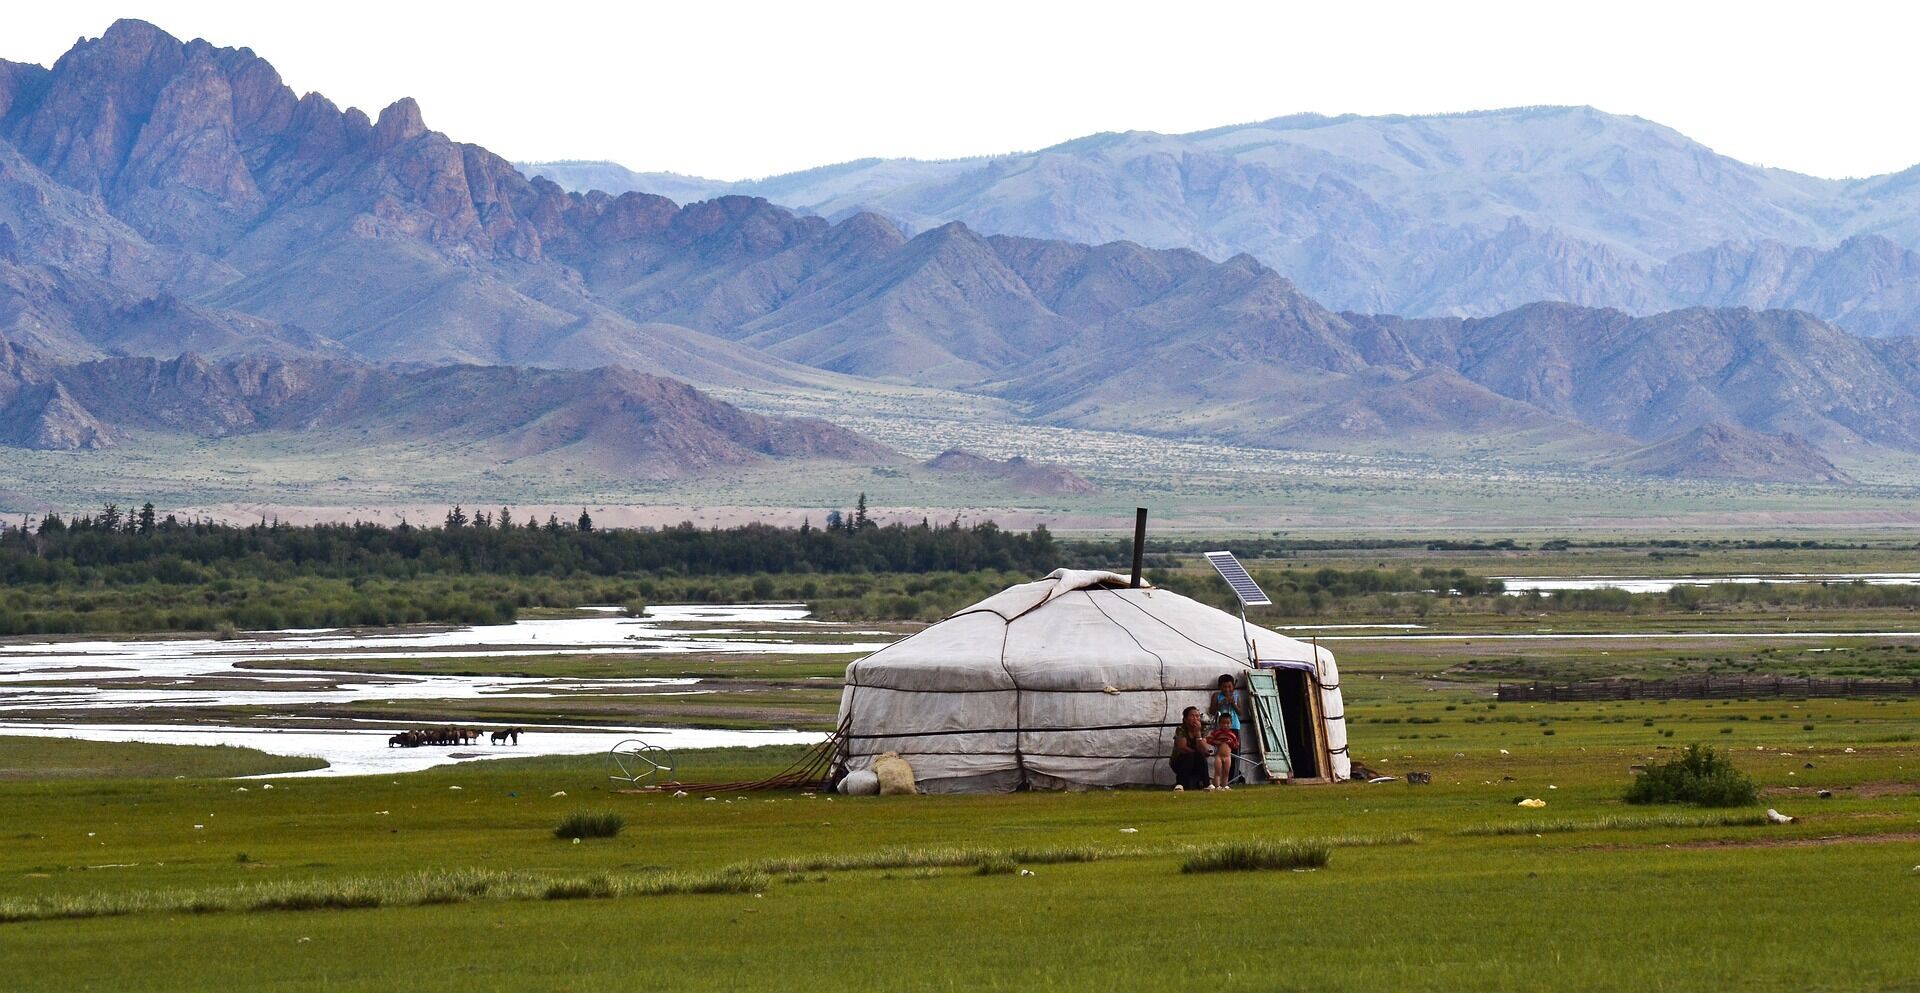 Галопом по степи: 4 полезные рекомендации по путешествию в Монголию